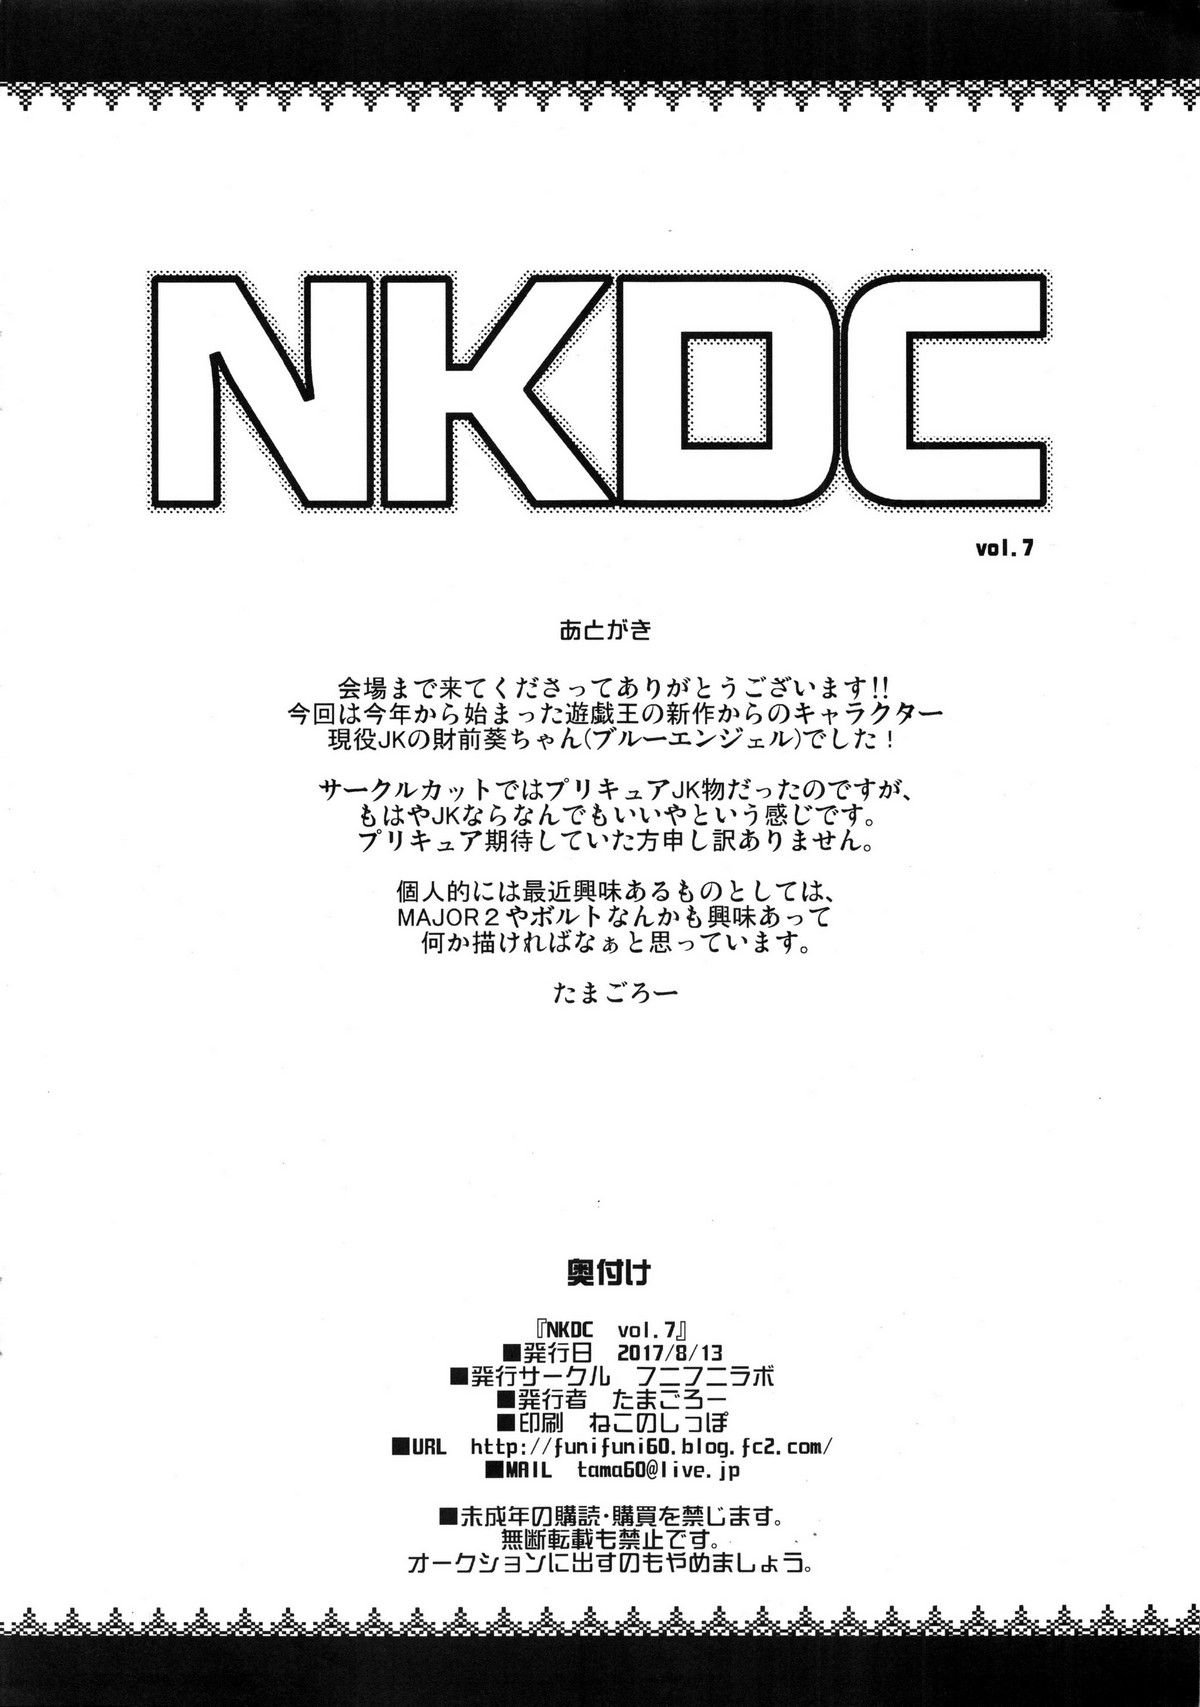 NKDC Vol. 7 numero d'image 7